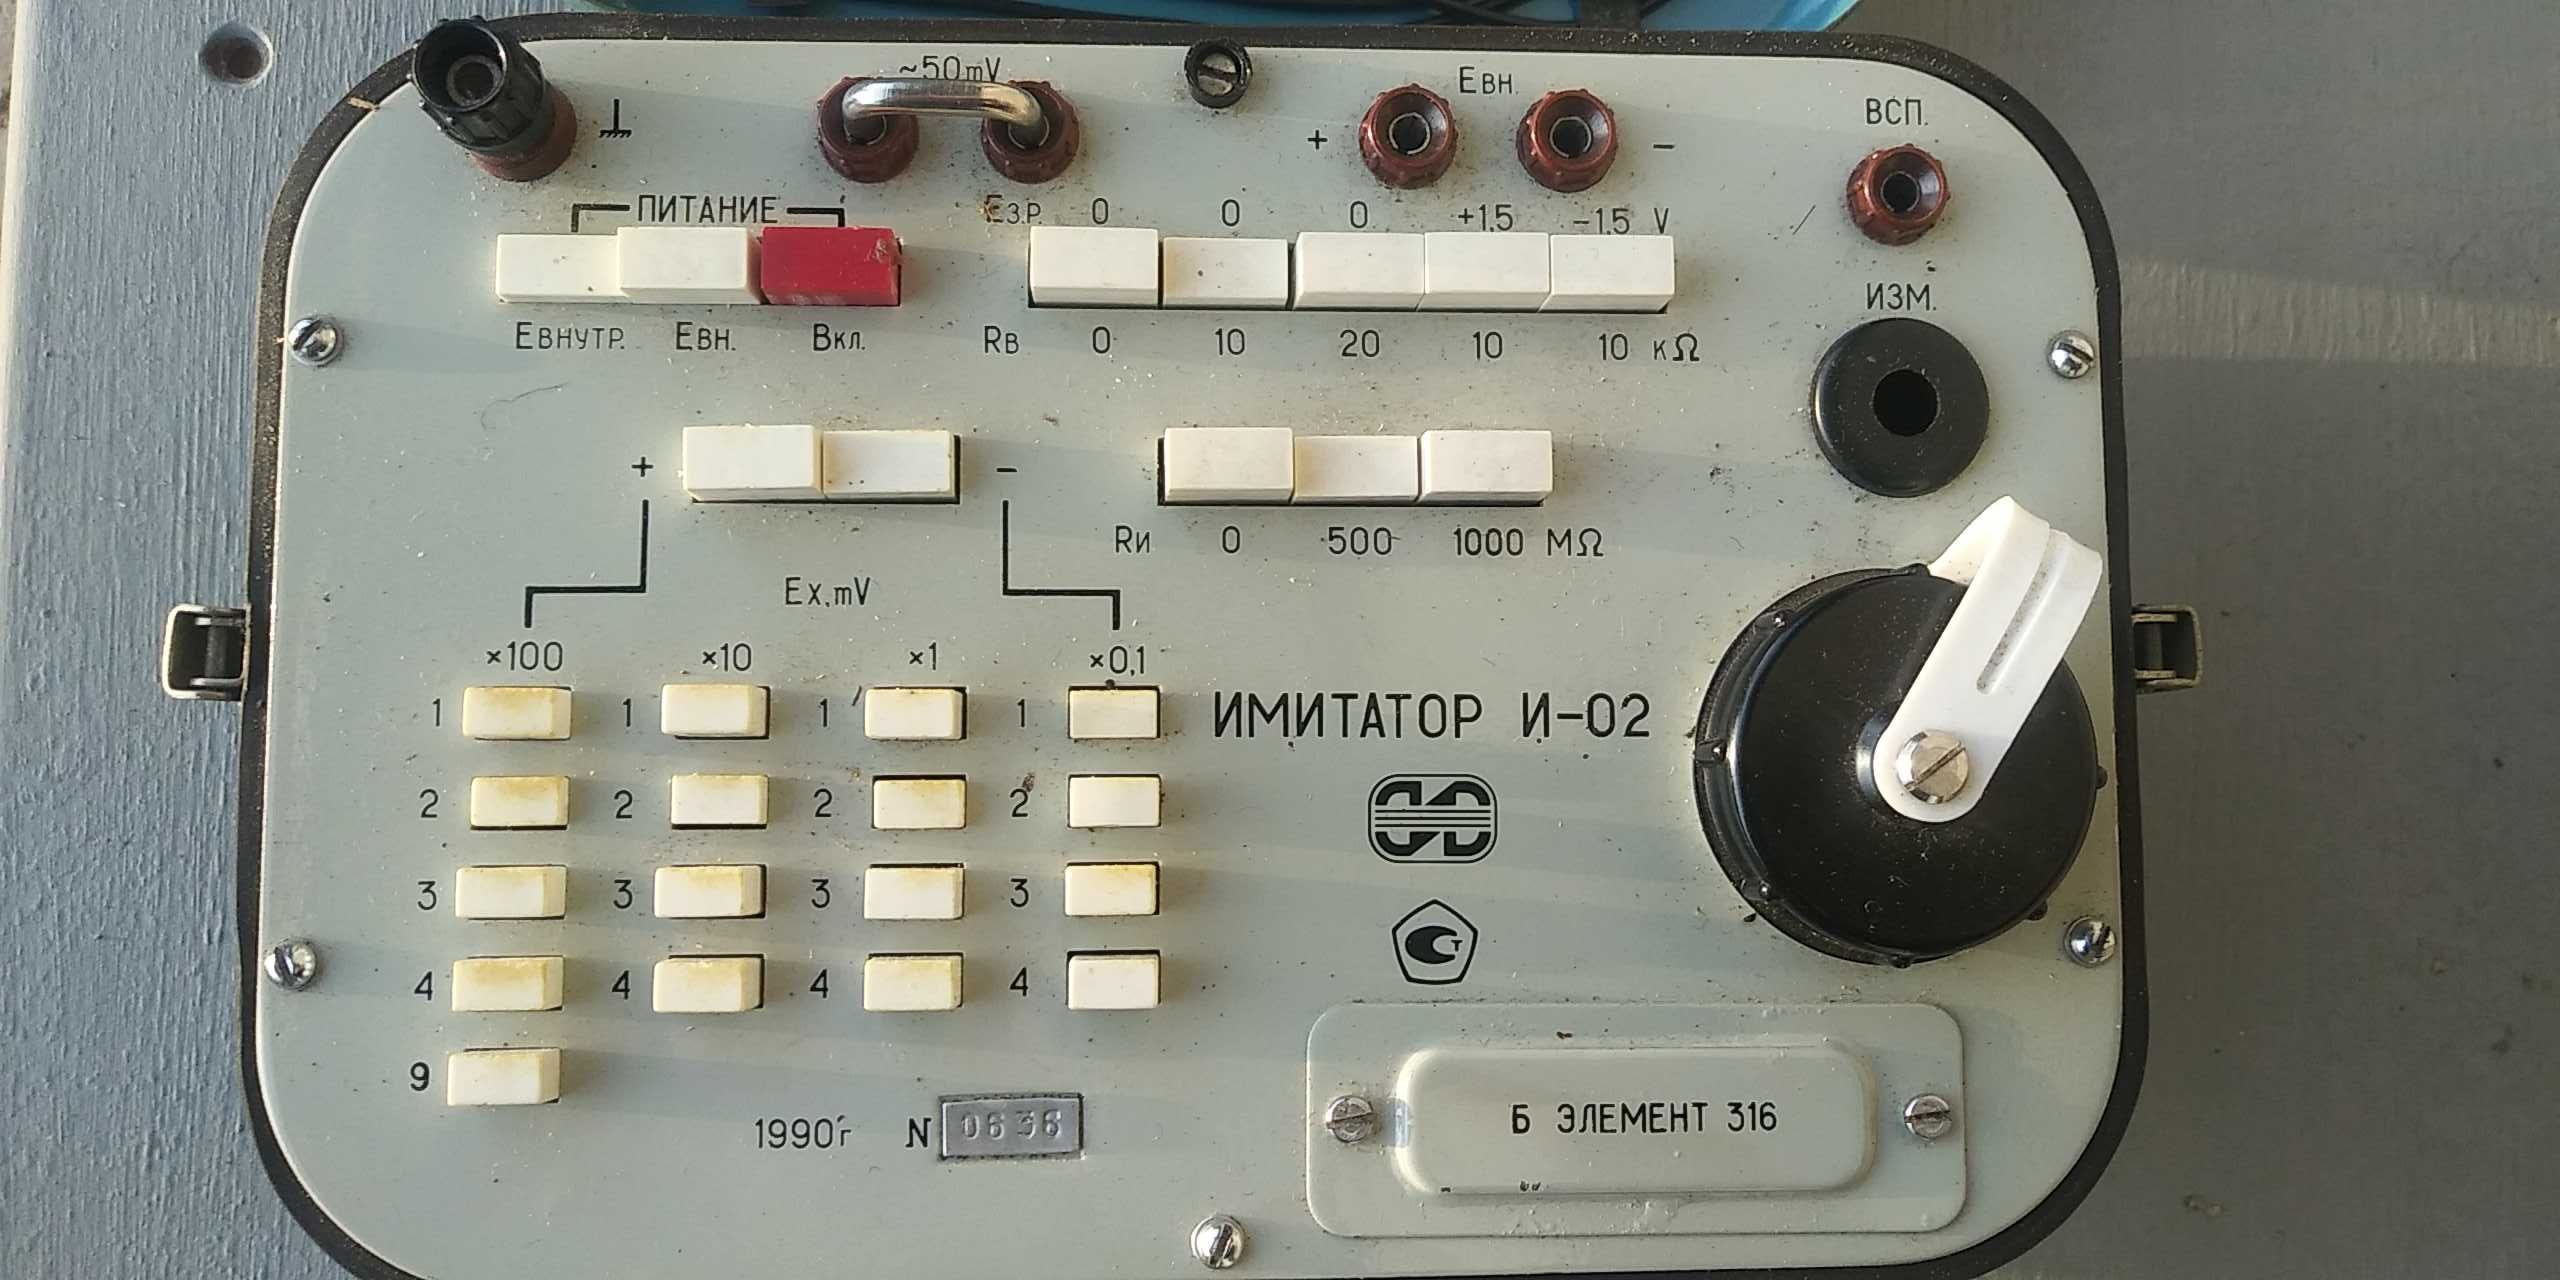 Имитатор электродной системы И-02 (прибор для работы или в коллекцию)